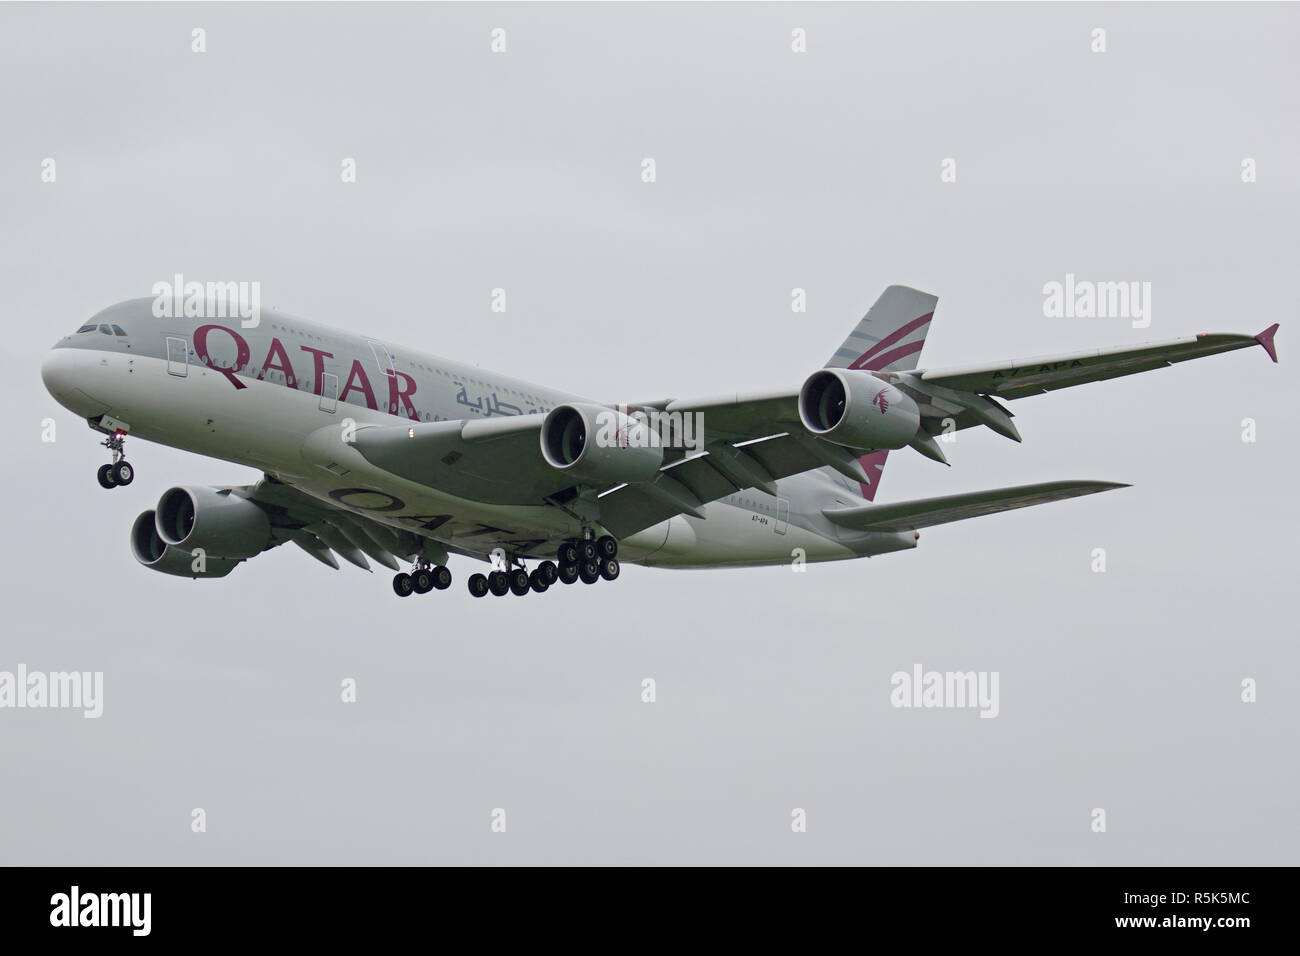 Qatar Airways Airbus A380-861 A7-APA landing at London Heathrow Airport Stock Photo